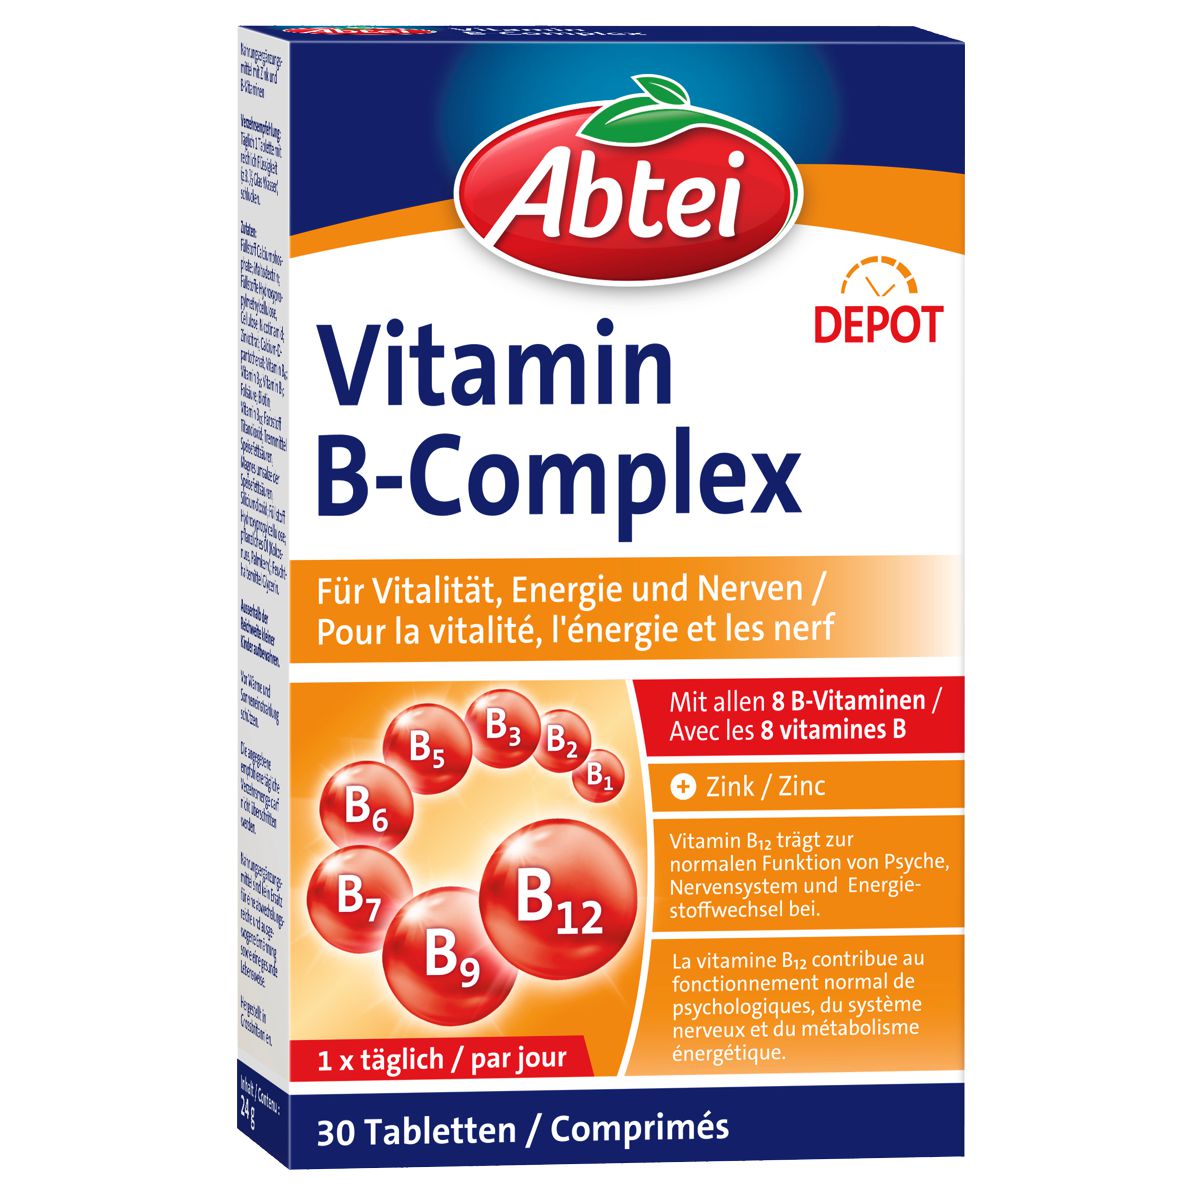 Abtei Vitamin B-Complex Depot für Vitalität, Energie und Nerven